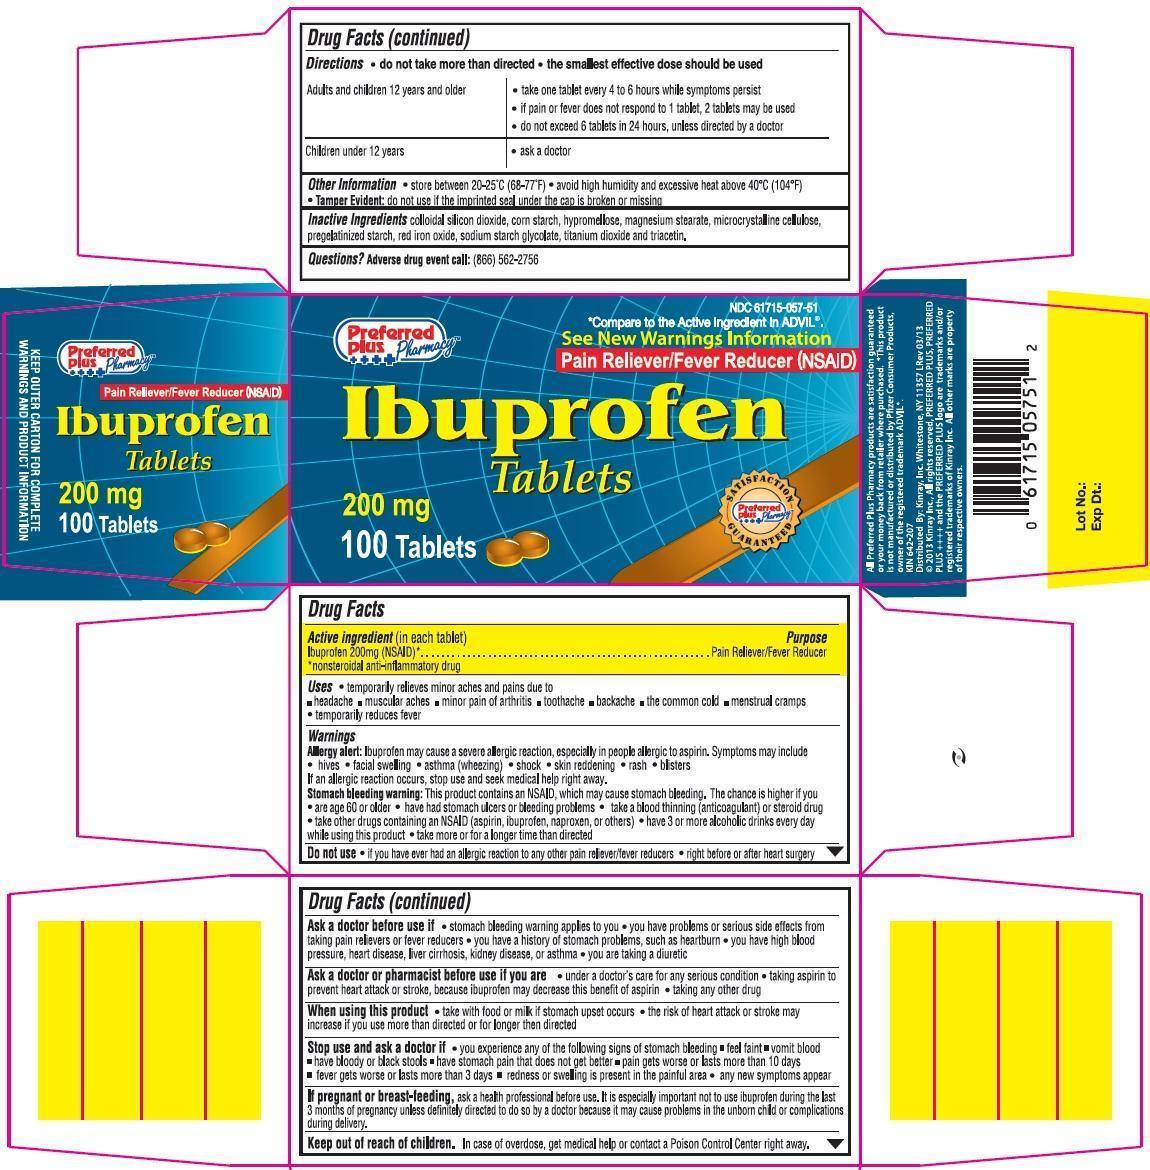 P.P. Ibuprofen Carton Image